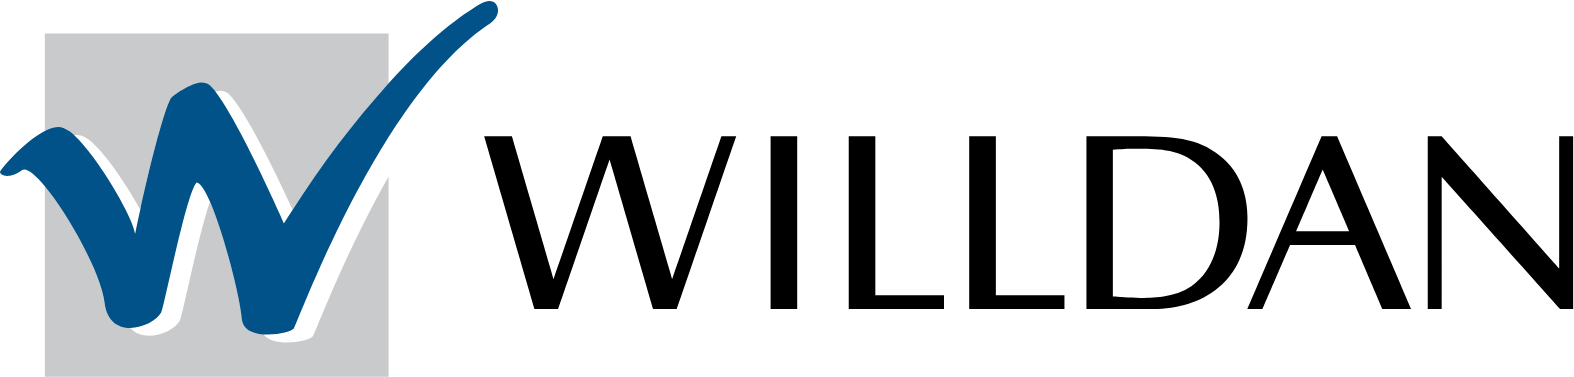 Willdan Group
 logo large (transparent PNG)